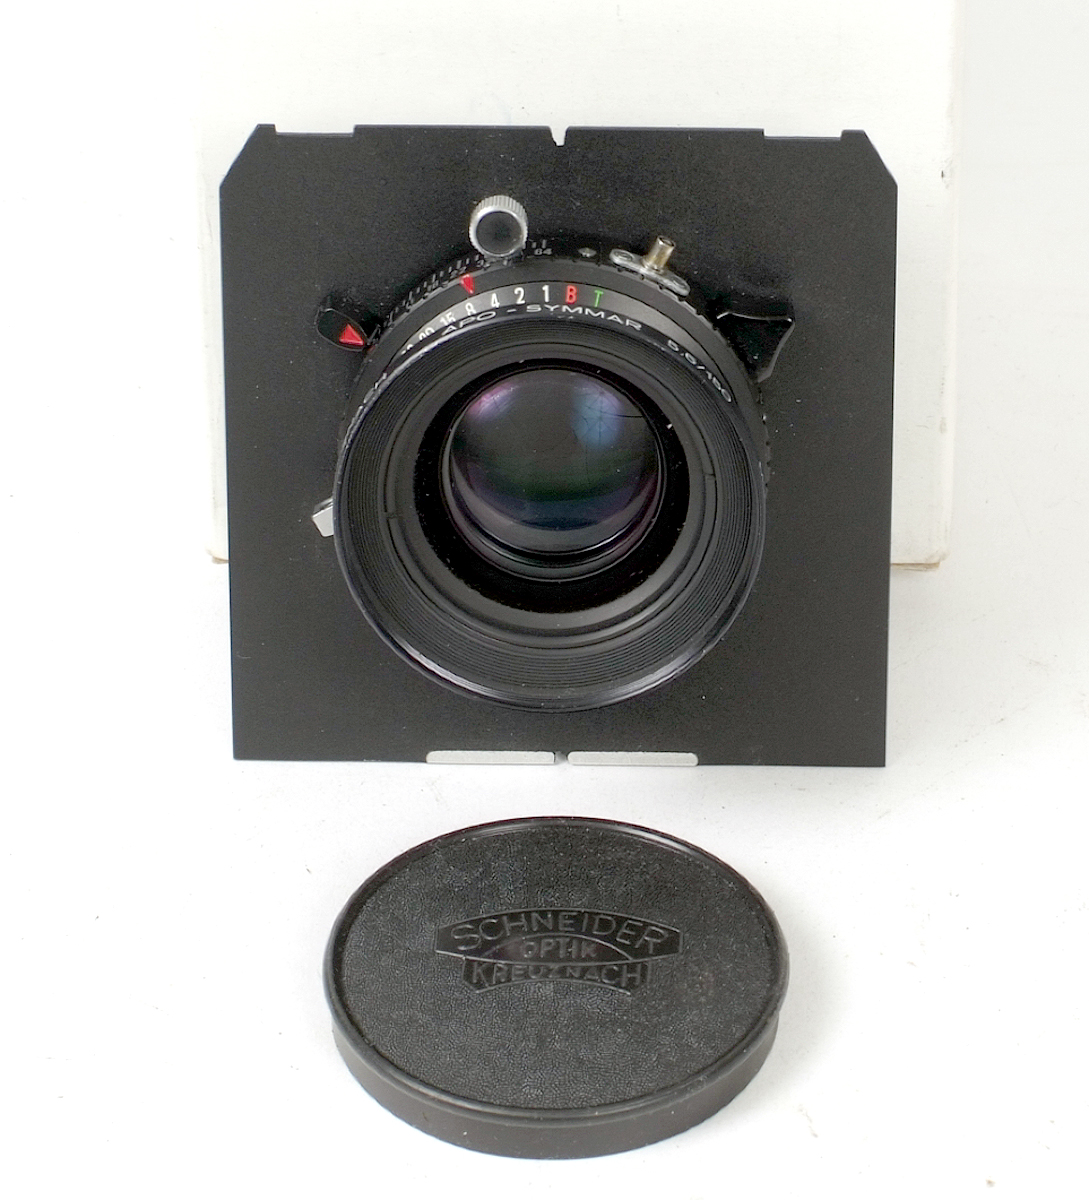 Schneider APO Symmar 150mm f5.6 Lens.